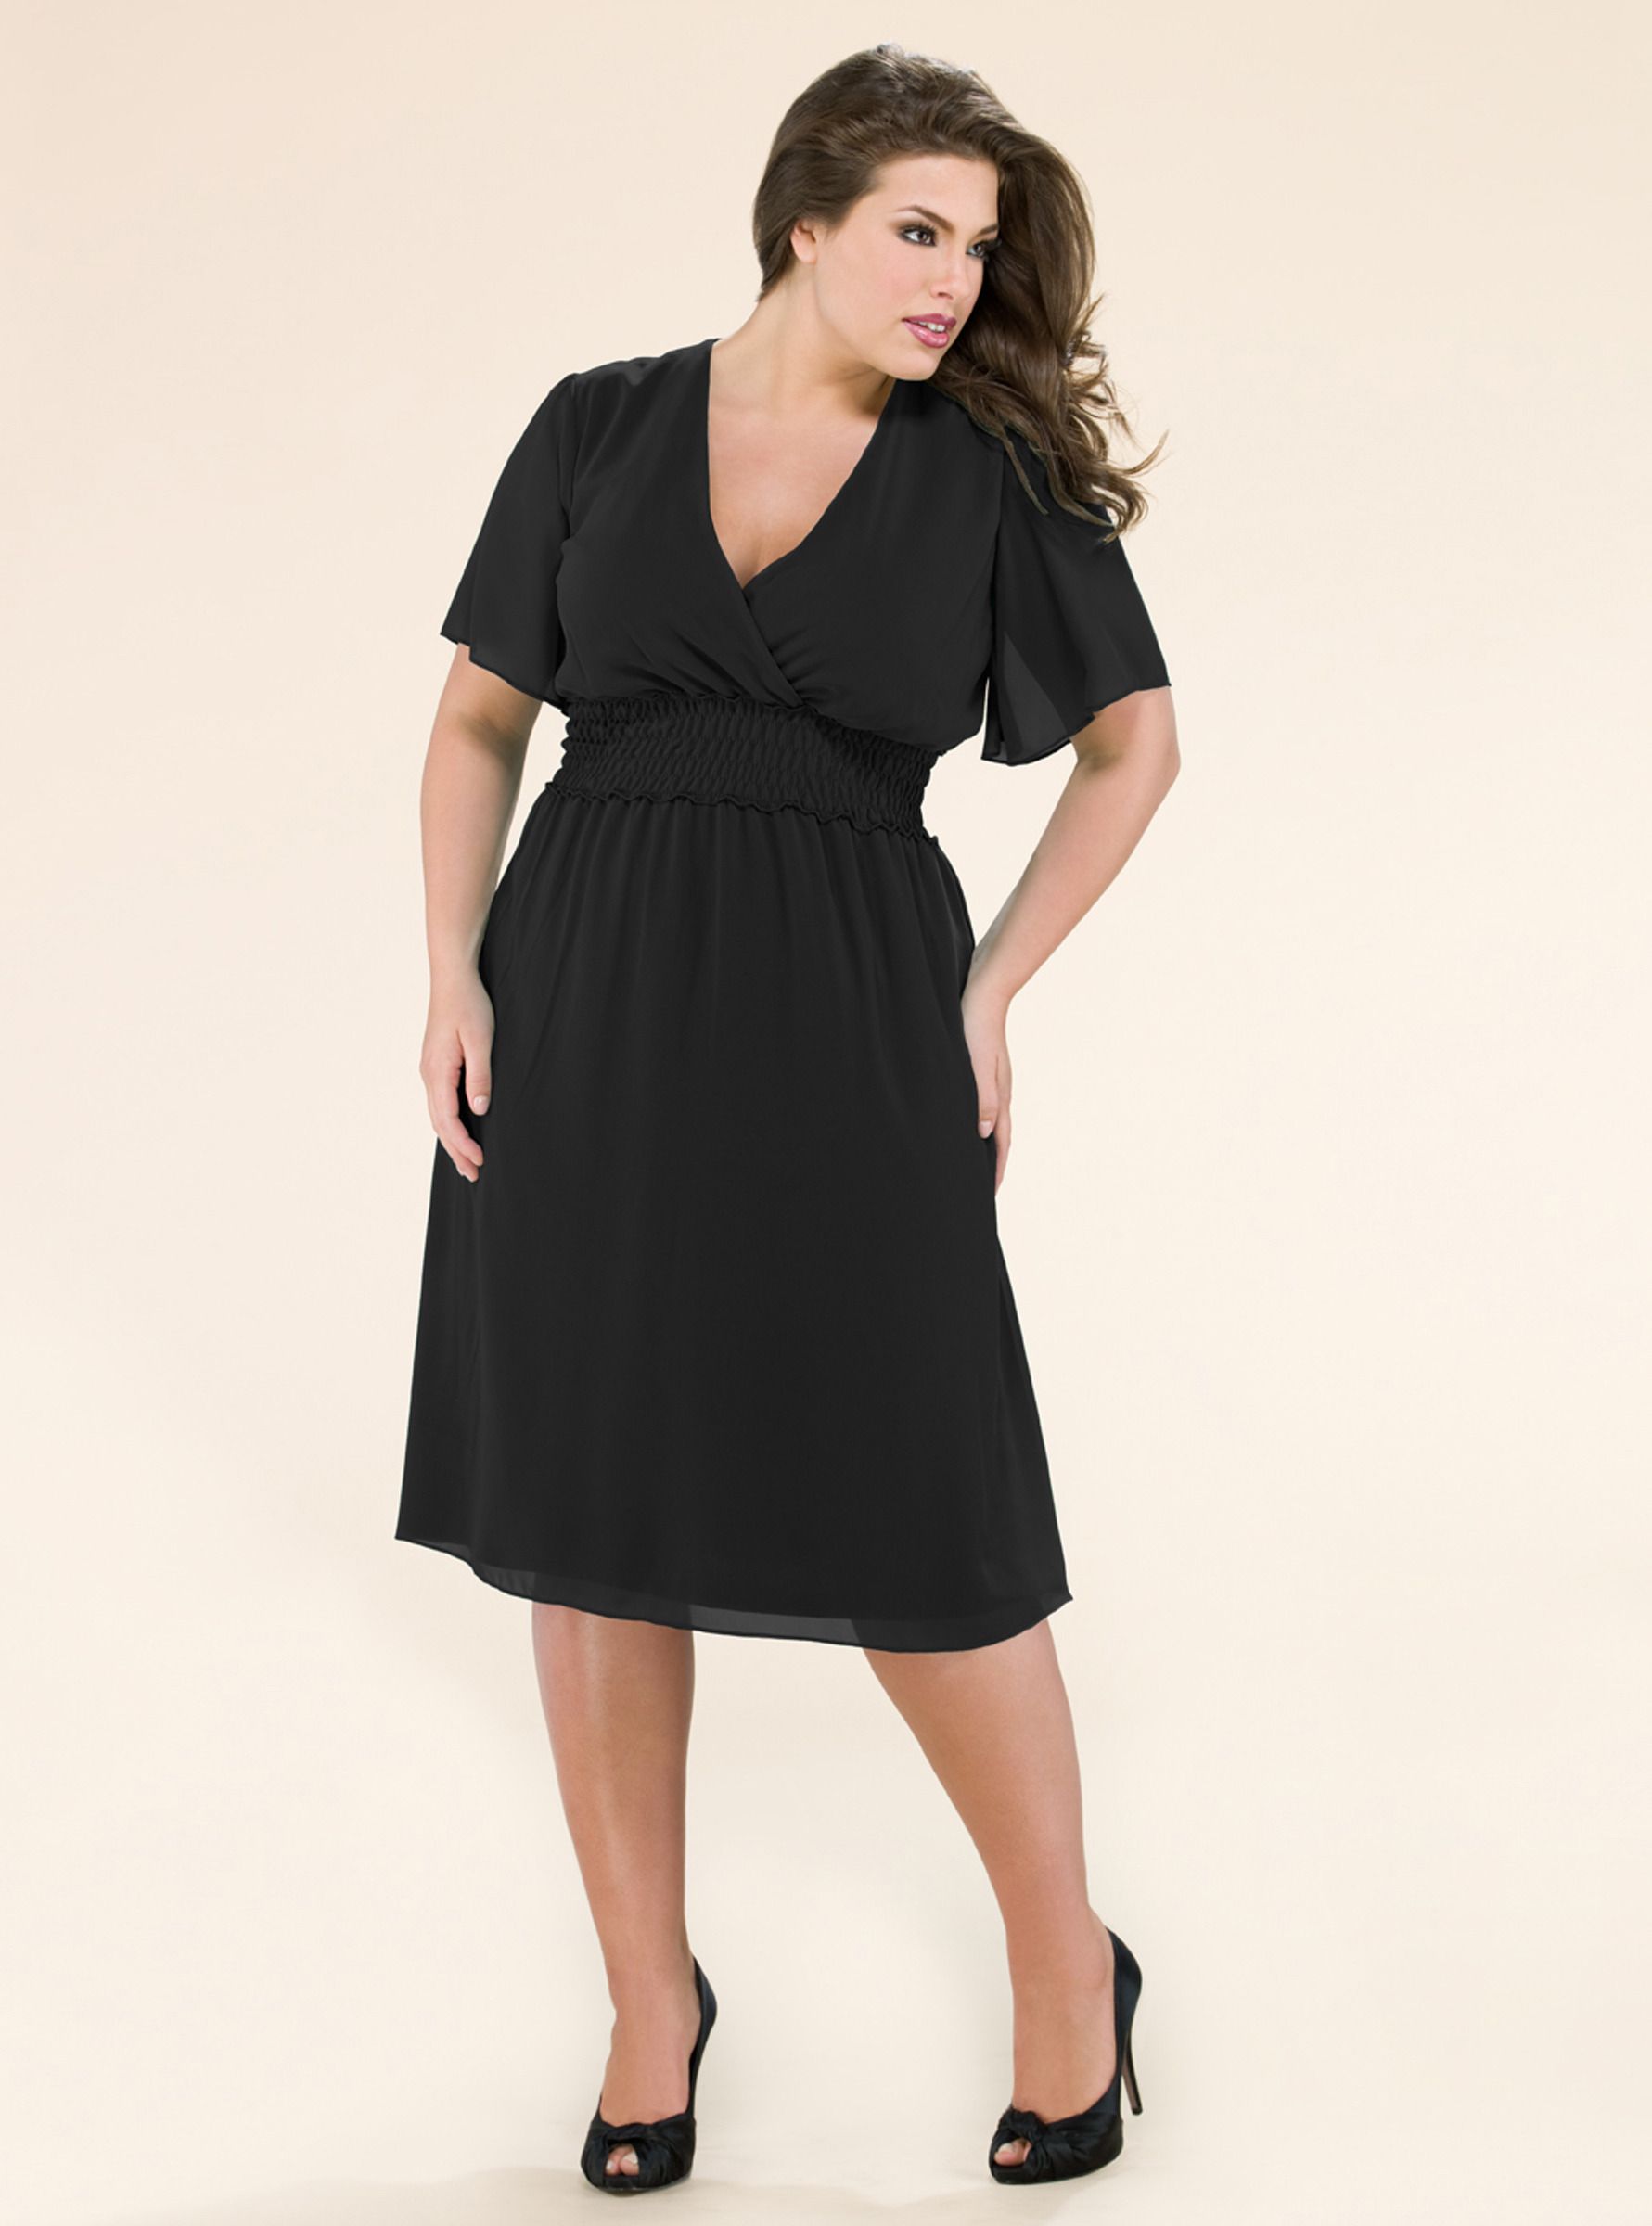 Plus Size 5X Kiyonna Stella Little Black Dress 30W 32W